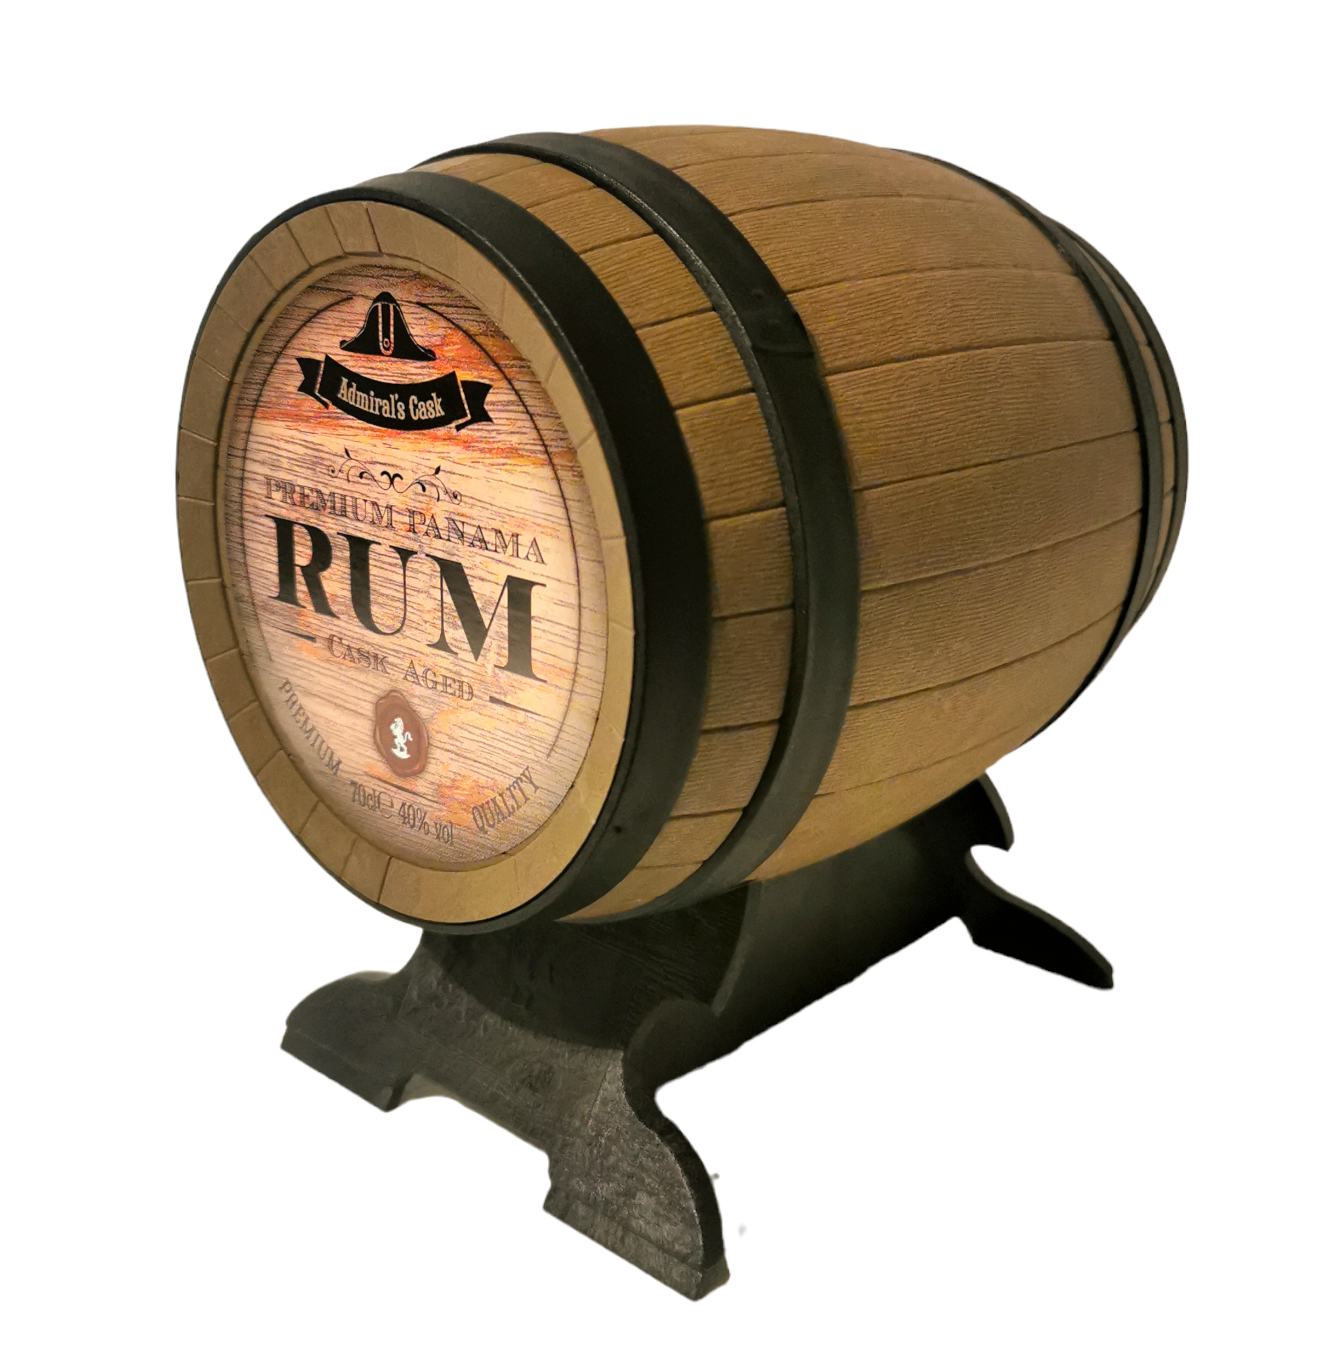 Admiral's Cask Premium Panama Rum 40% 70cl